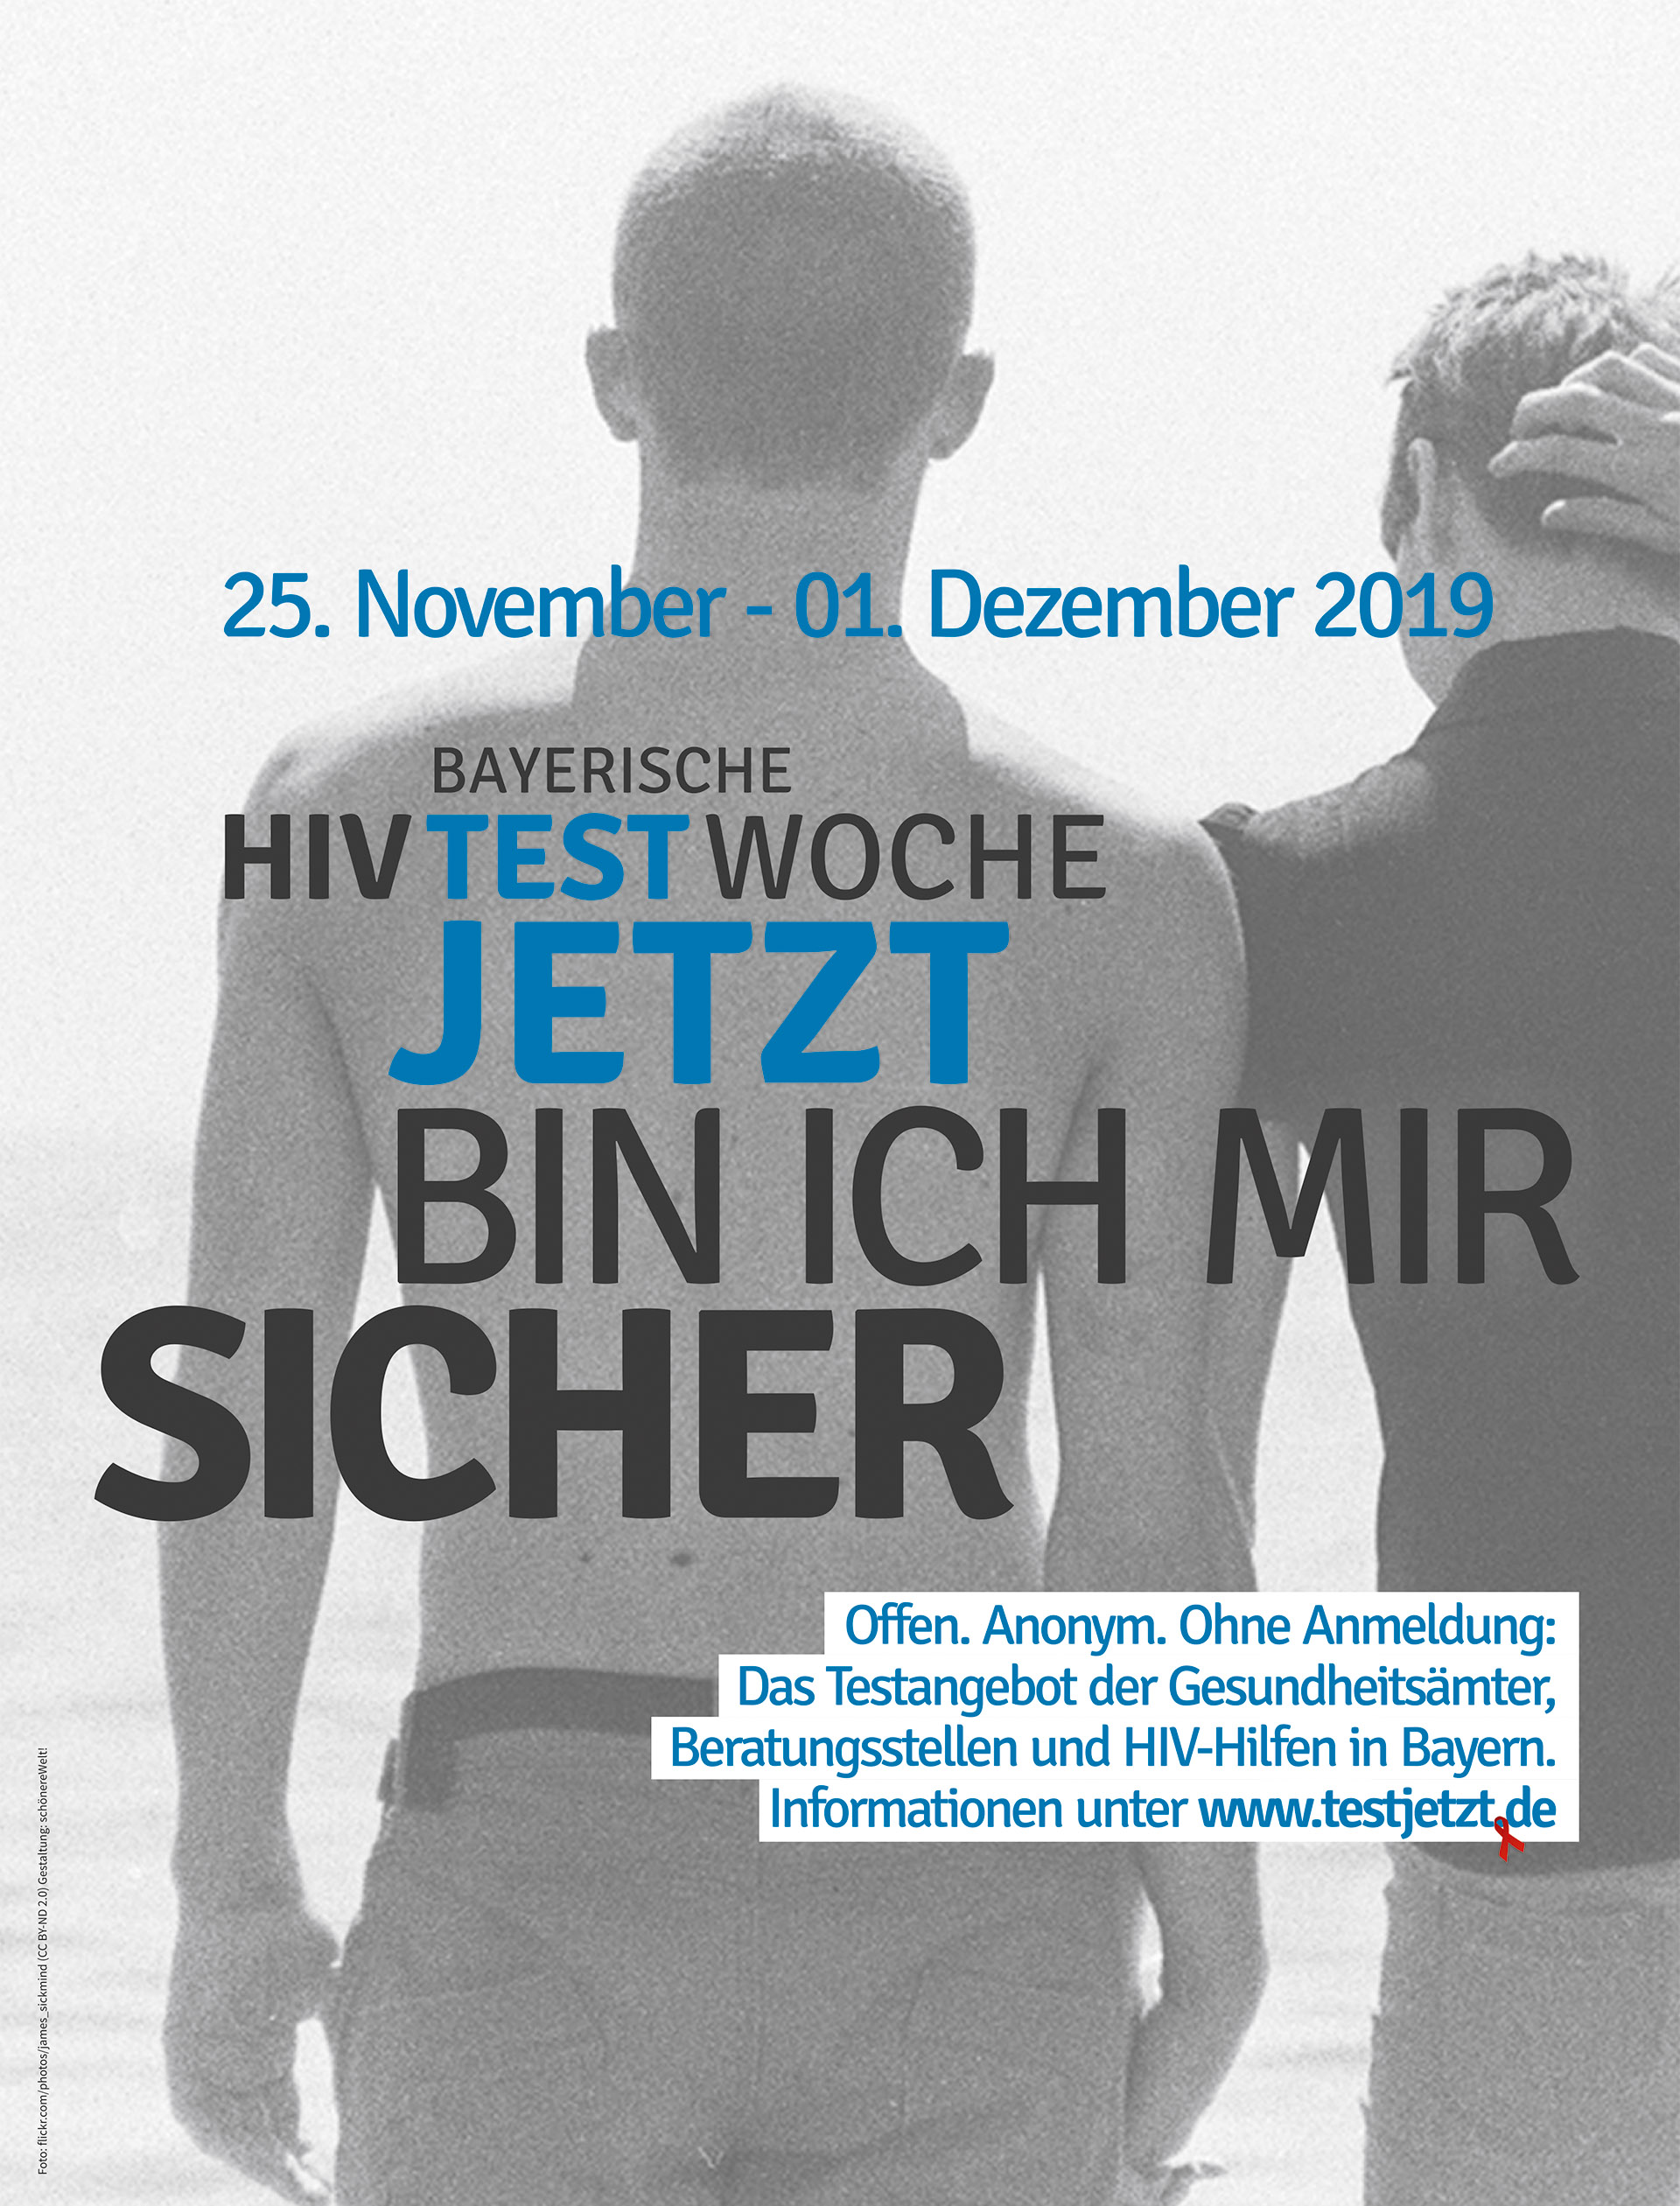 Motiv mit zwei androgynen Menschen zur bayerischen HIV-Testwoche vom 25. 11. - 11. 12. 2019